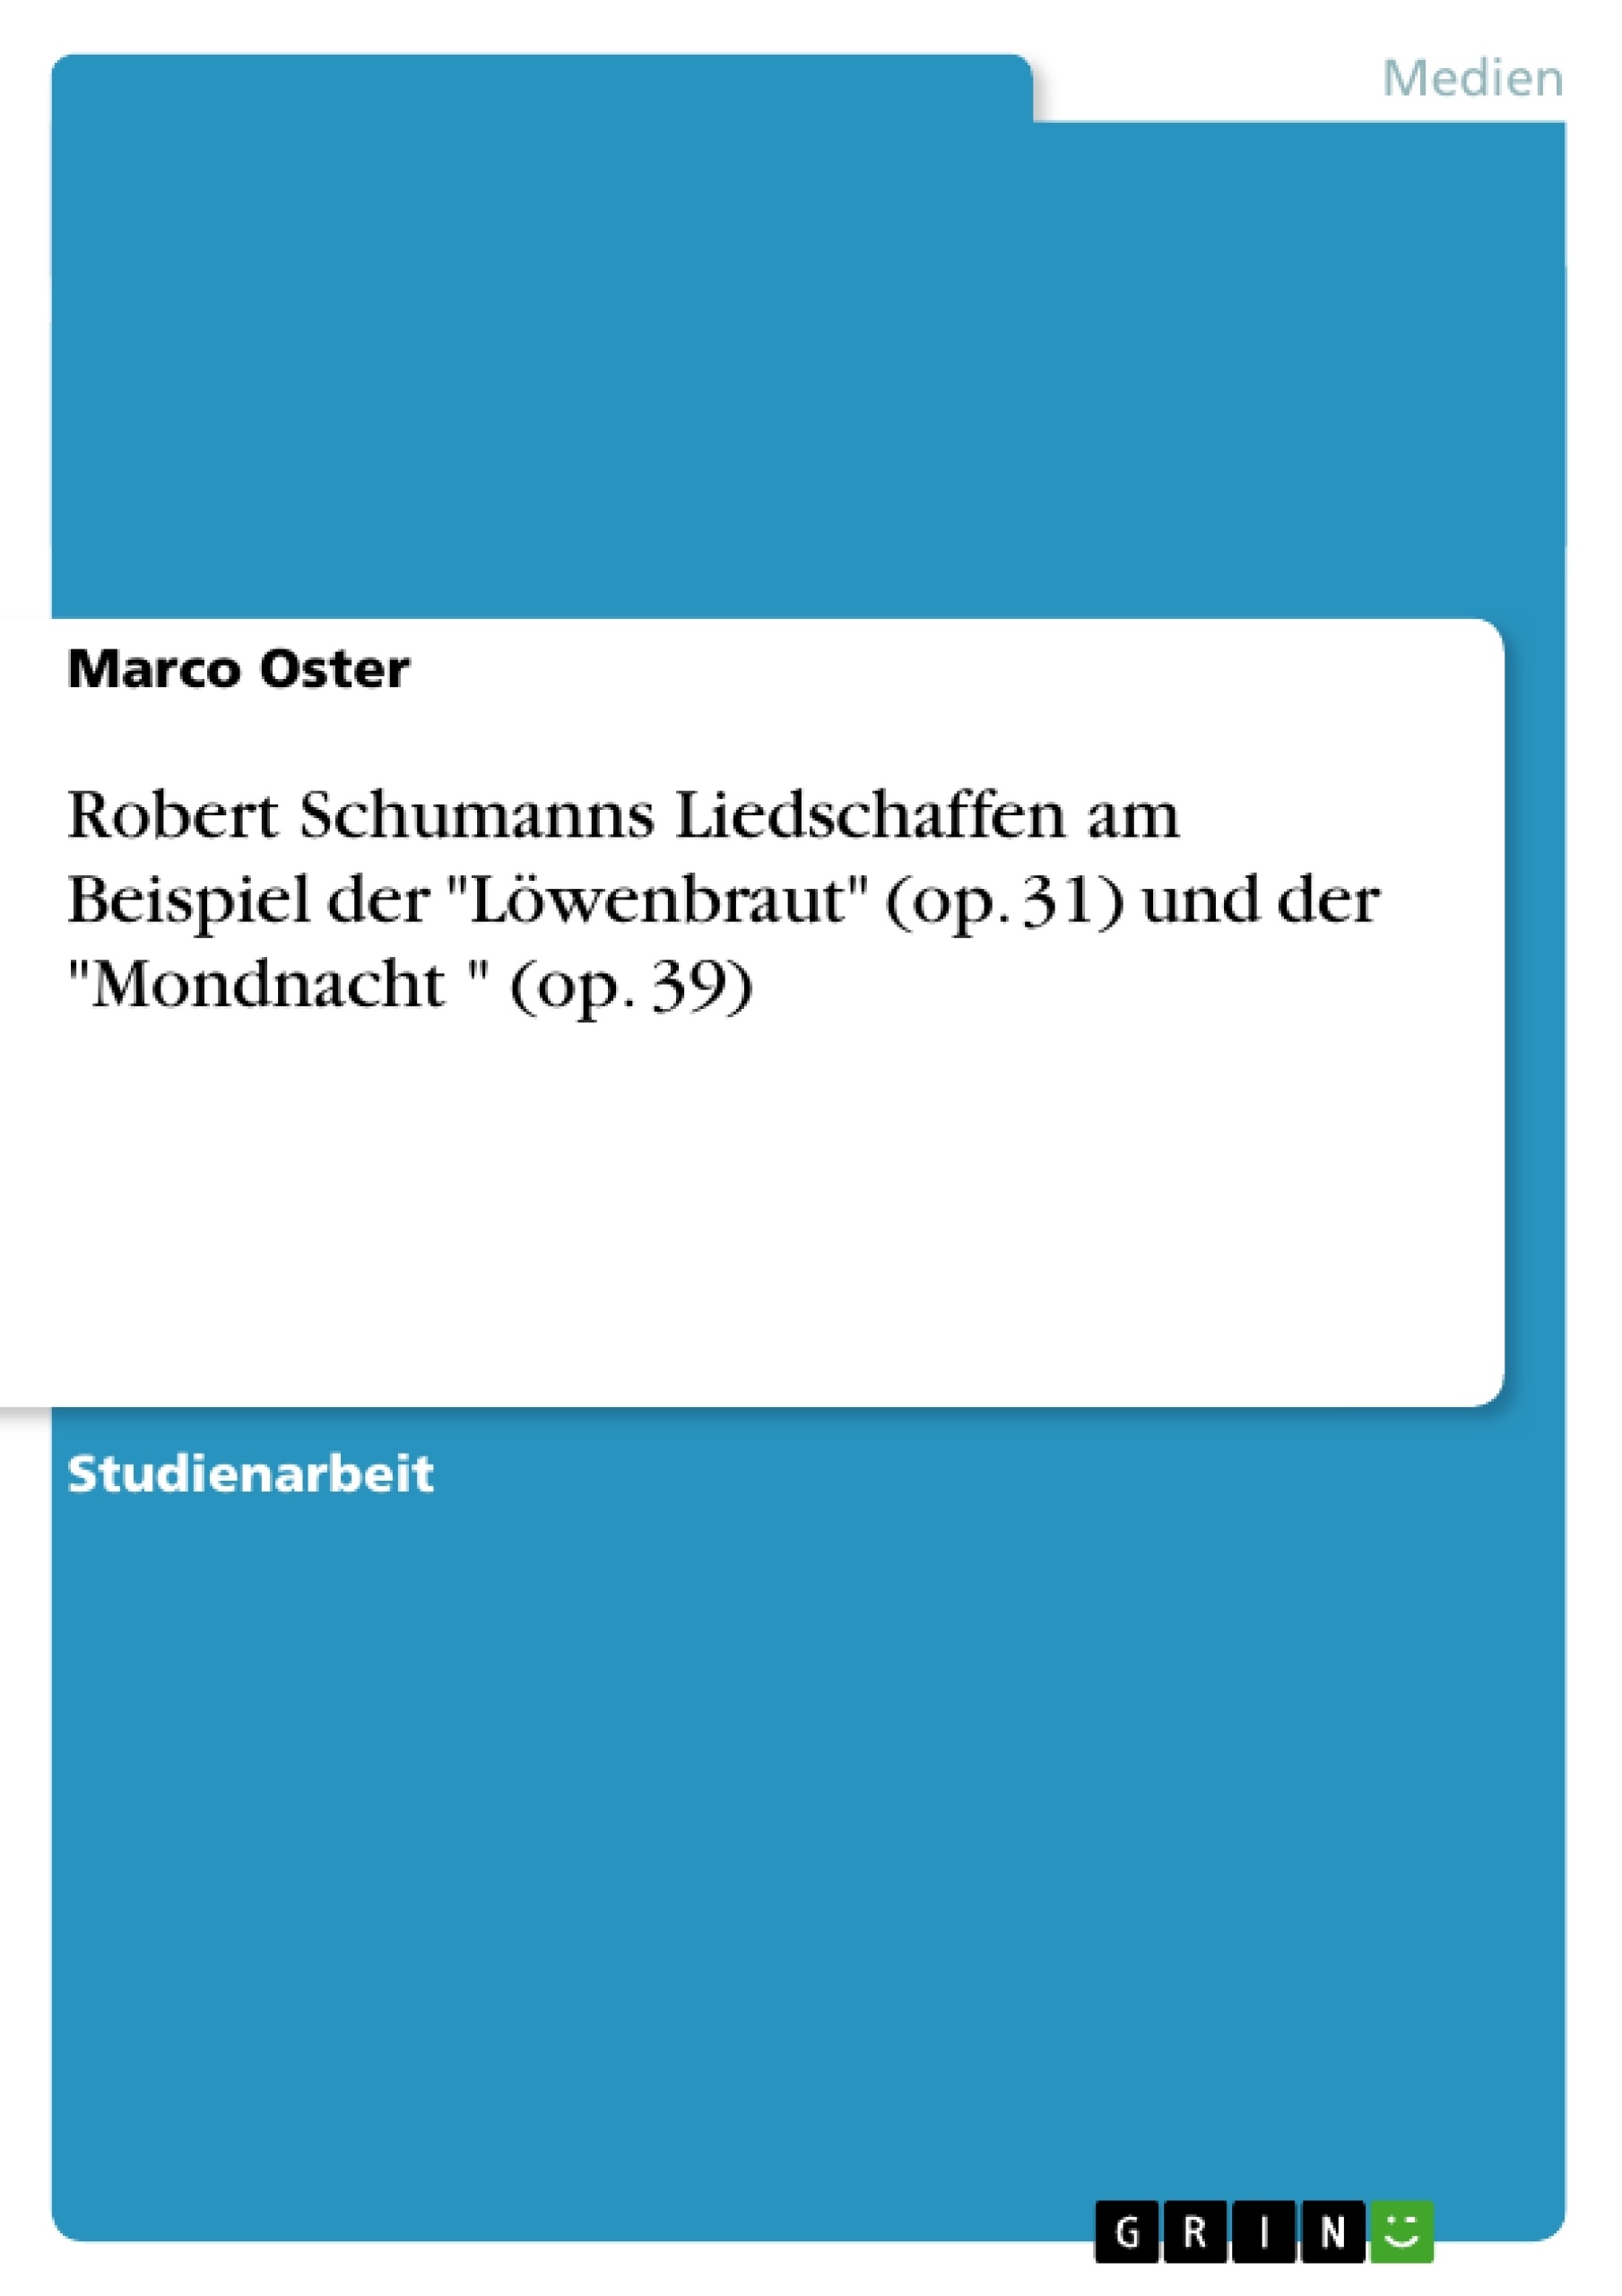 Título: Robert Schumanns Liedschaffen am Beispiel der "Löwenbraut" (op. 31) und der "Mondnacht " (op. 39)